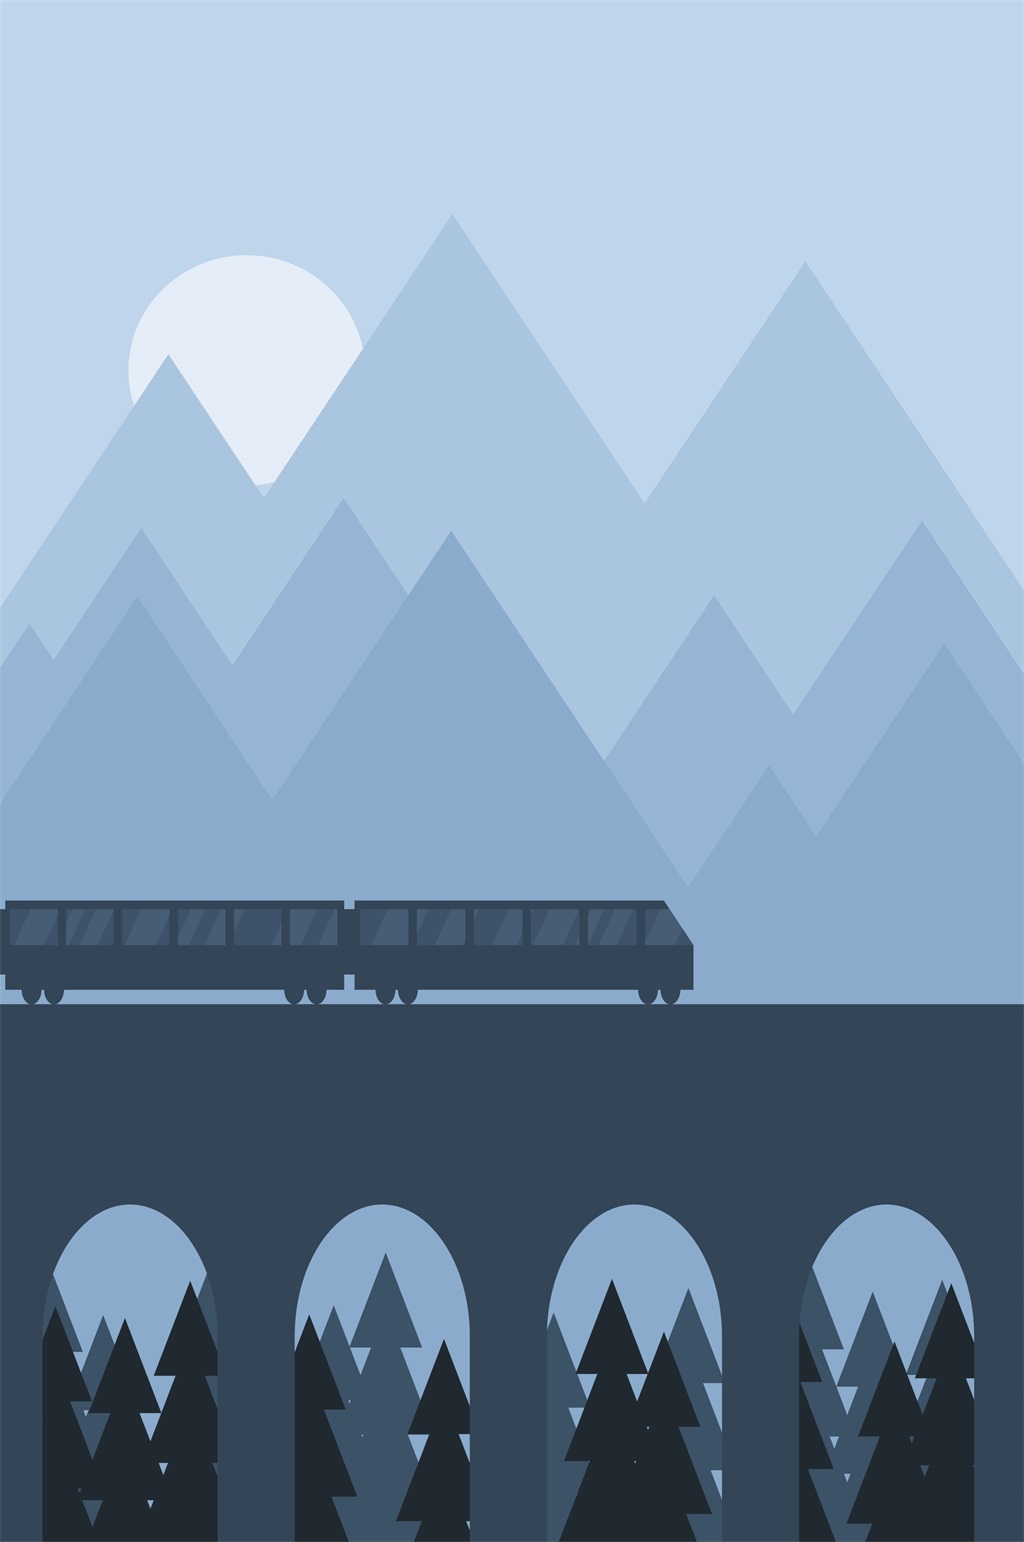 夜晚手绘火车风景插画背景立即下载世界那么大可爱女孩坐火车旅行日记